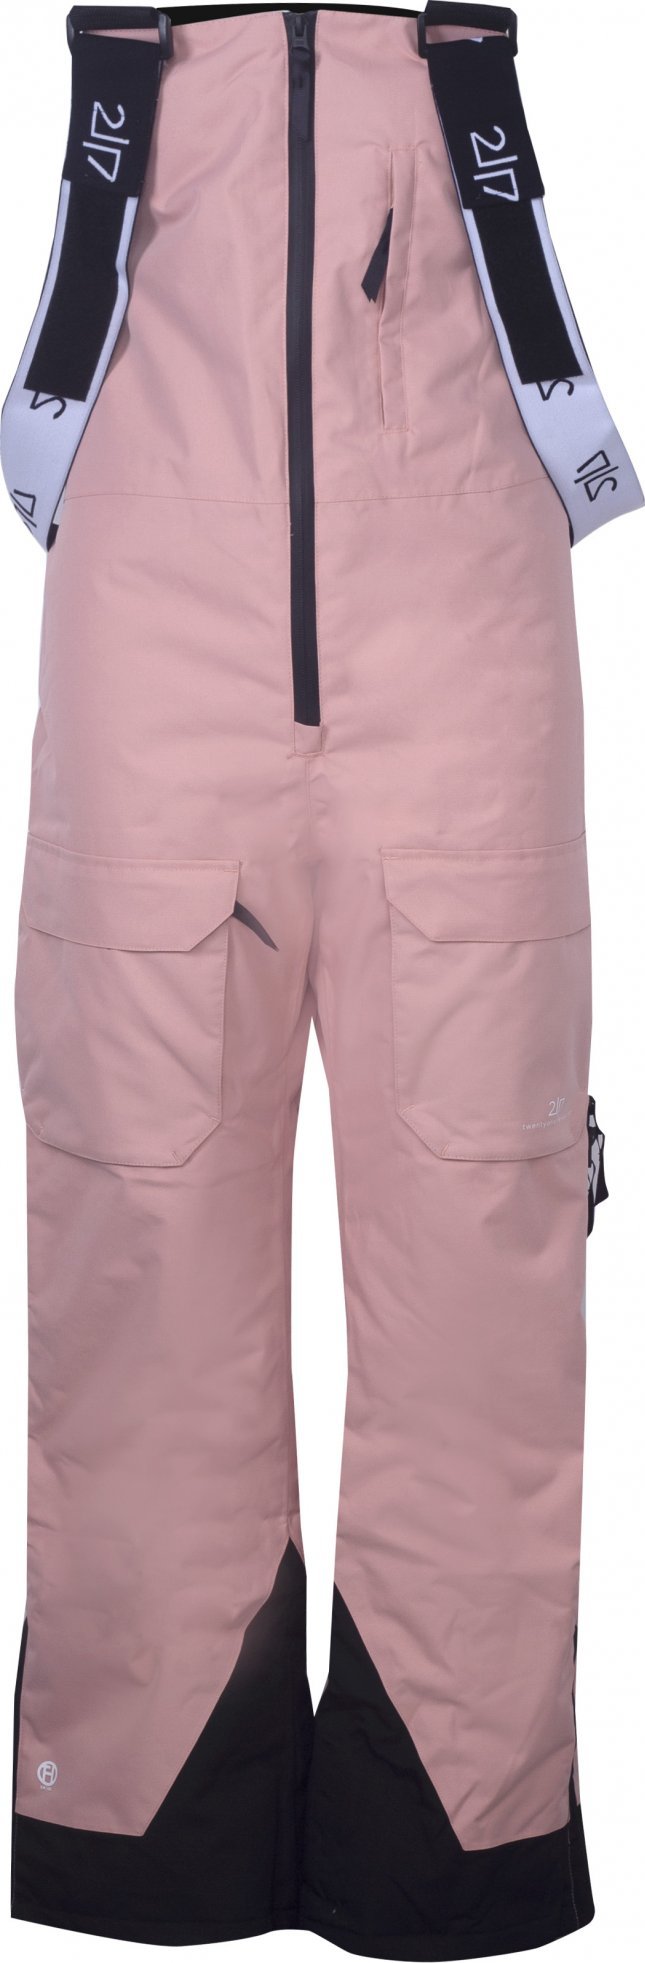 Dámské lyžařské kalhoty s náprsenkou 2117 Backa Eco růžová Velikost: XS